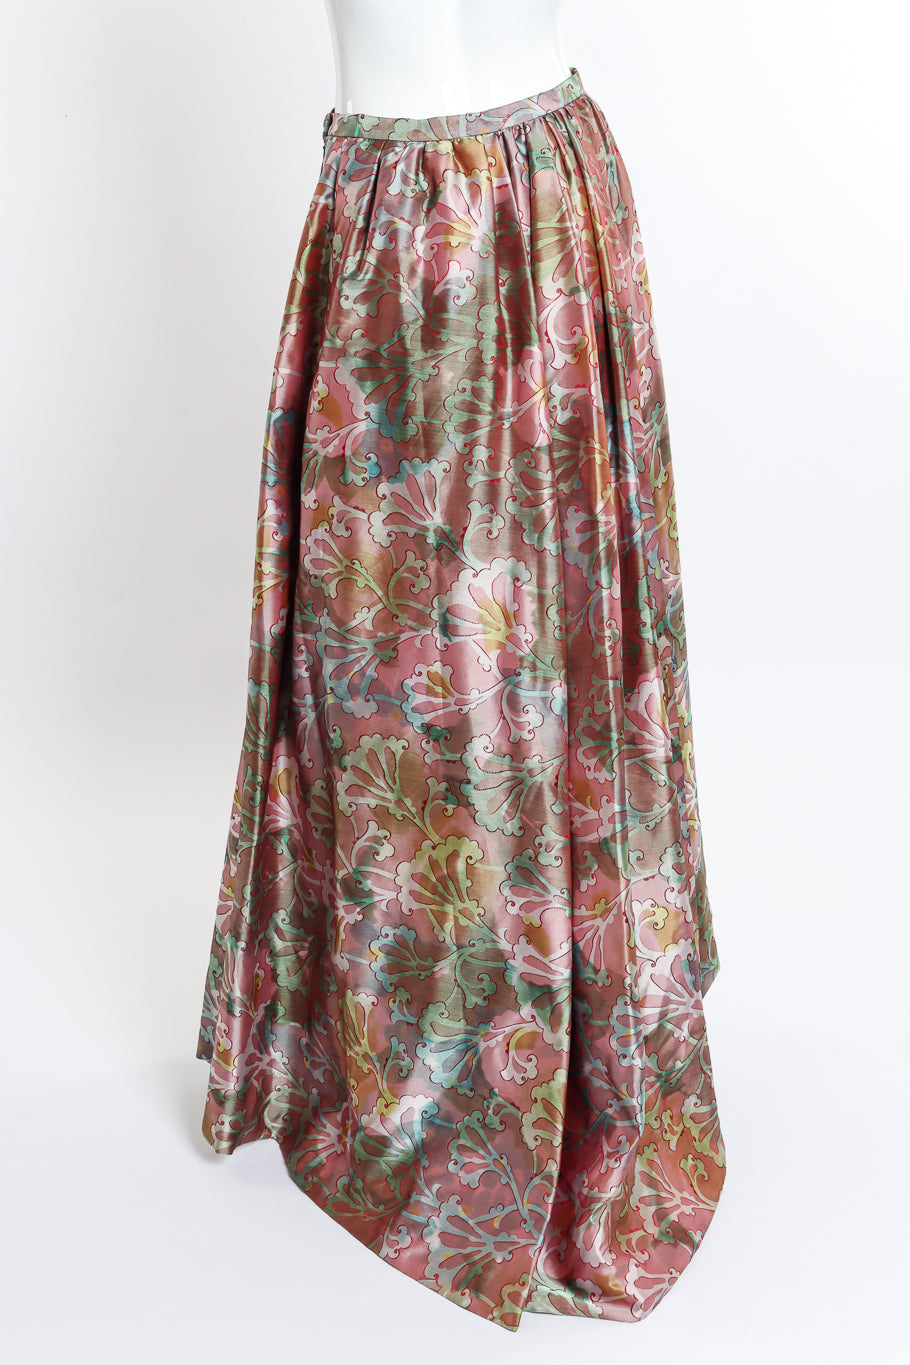 Vintage Christian Lacroix Silk Fleur Ball Skirt back on mannequin @recess la